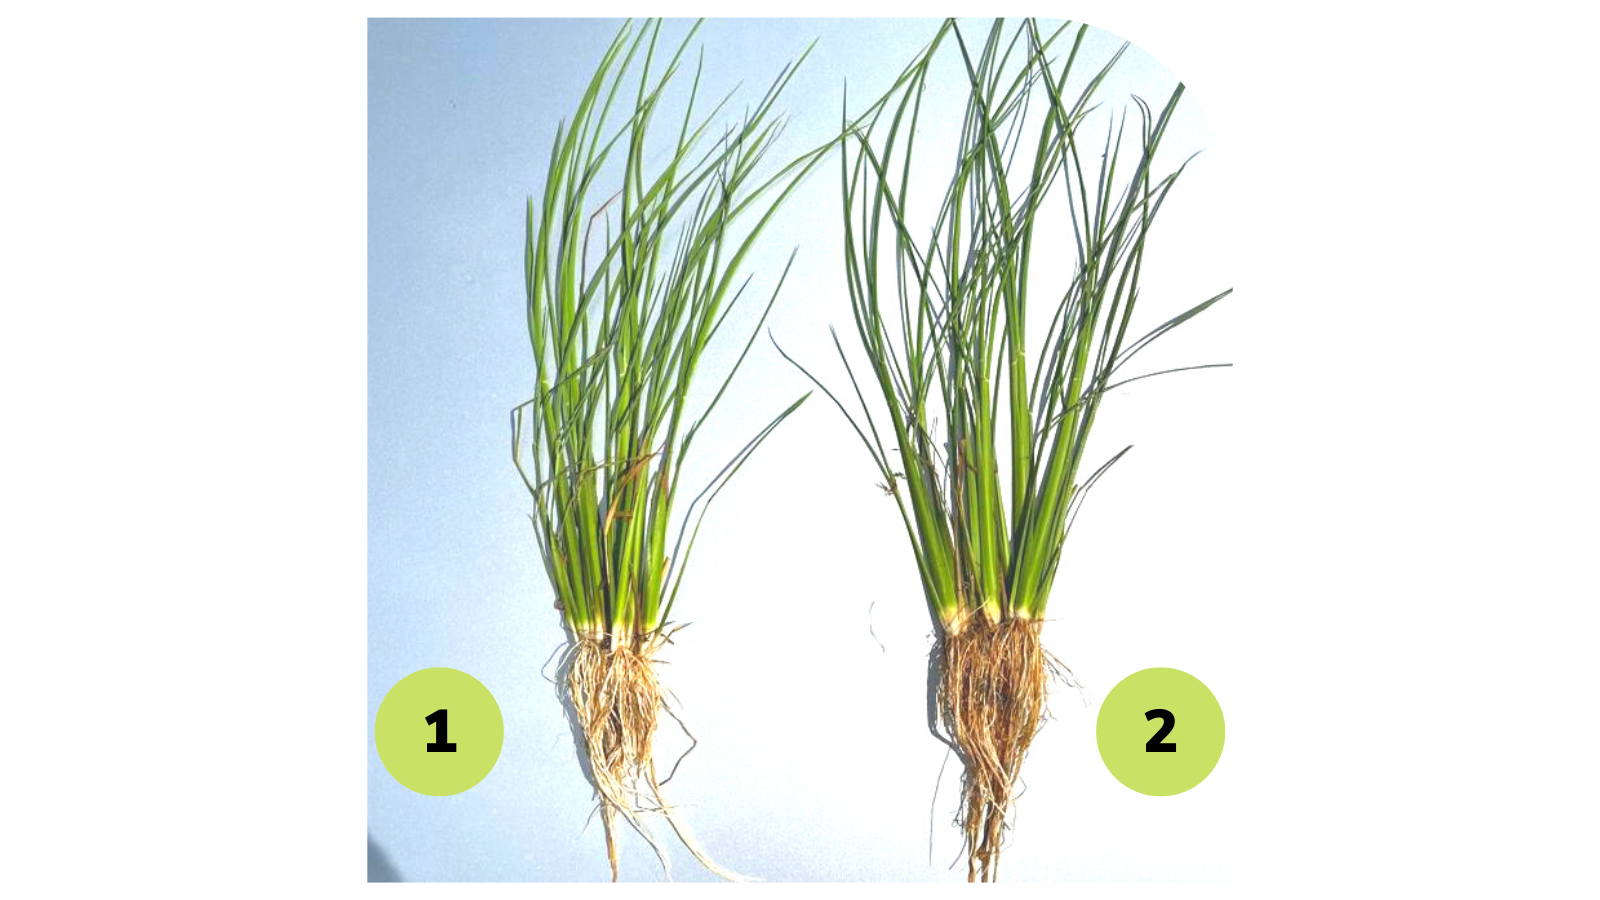 Omex Bio 20 y Zinc Flow para potenciar el desarrollo del arroz